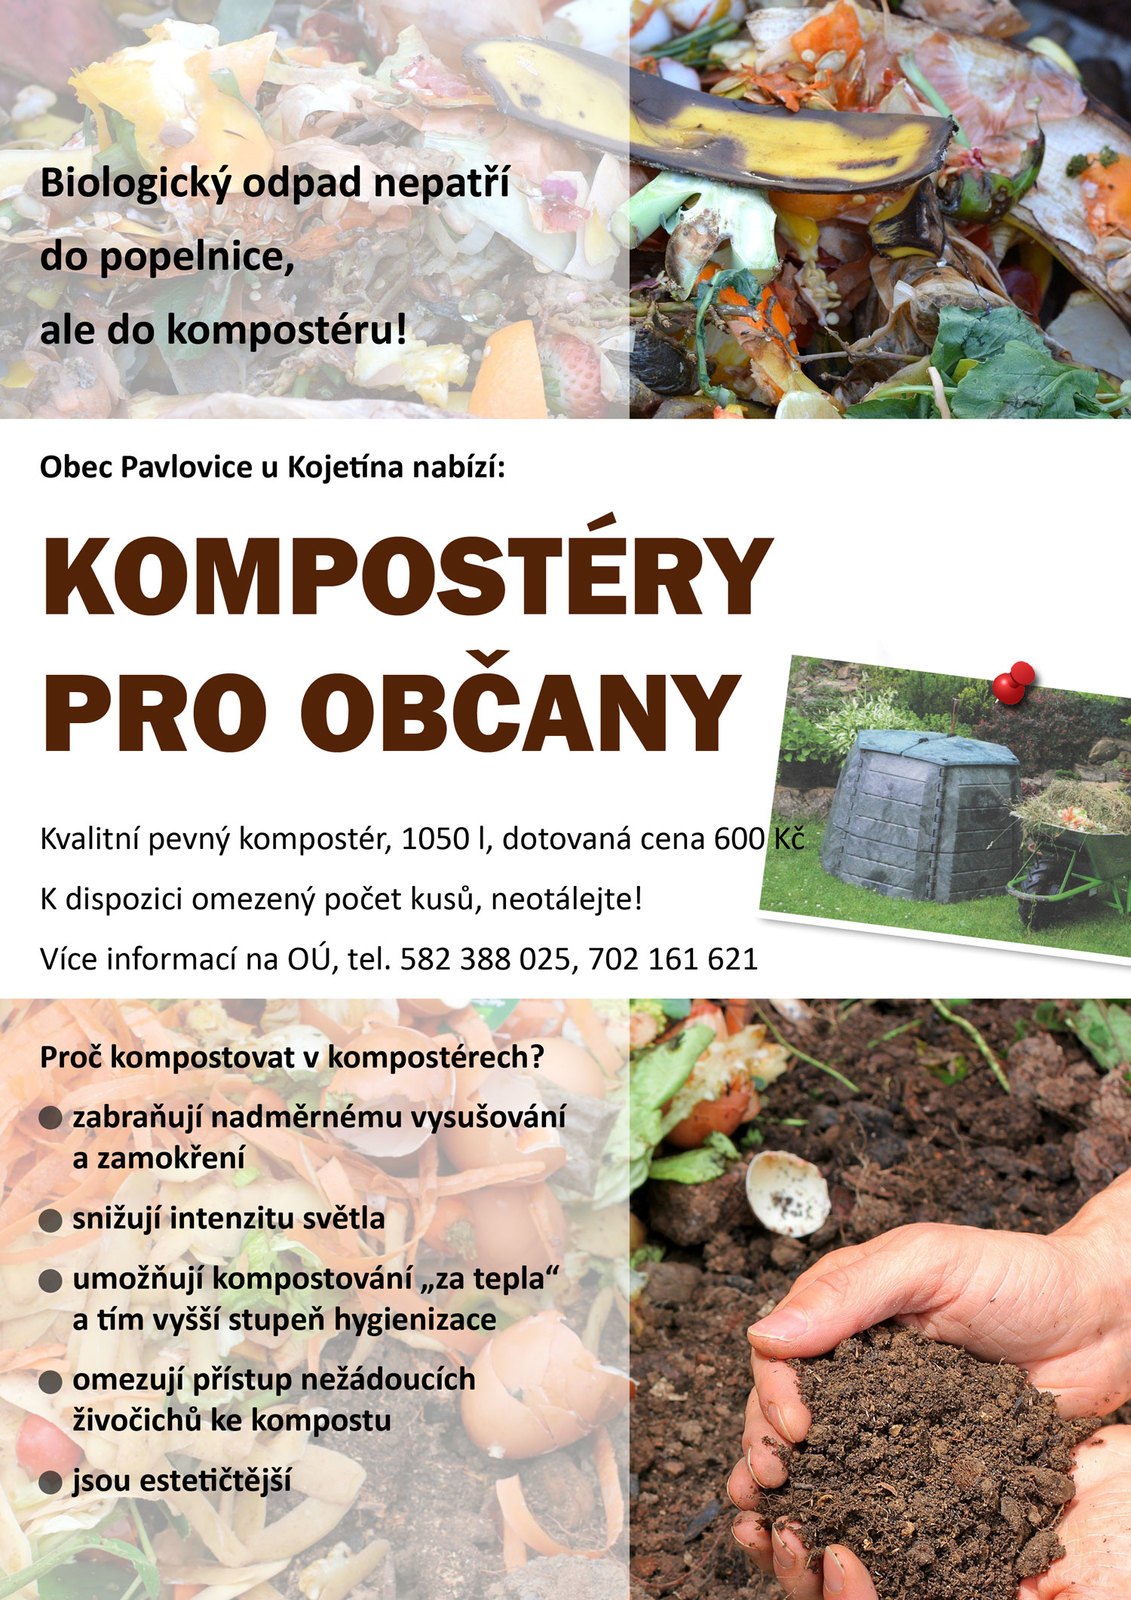 Kompostéry pro občany